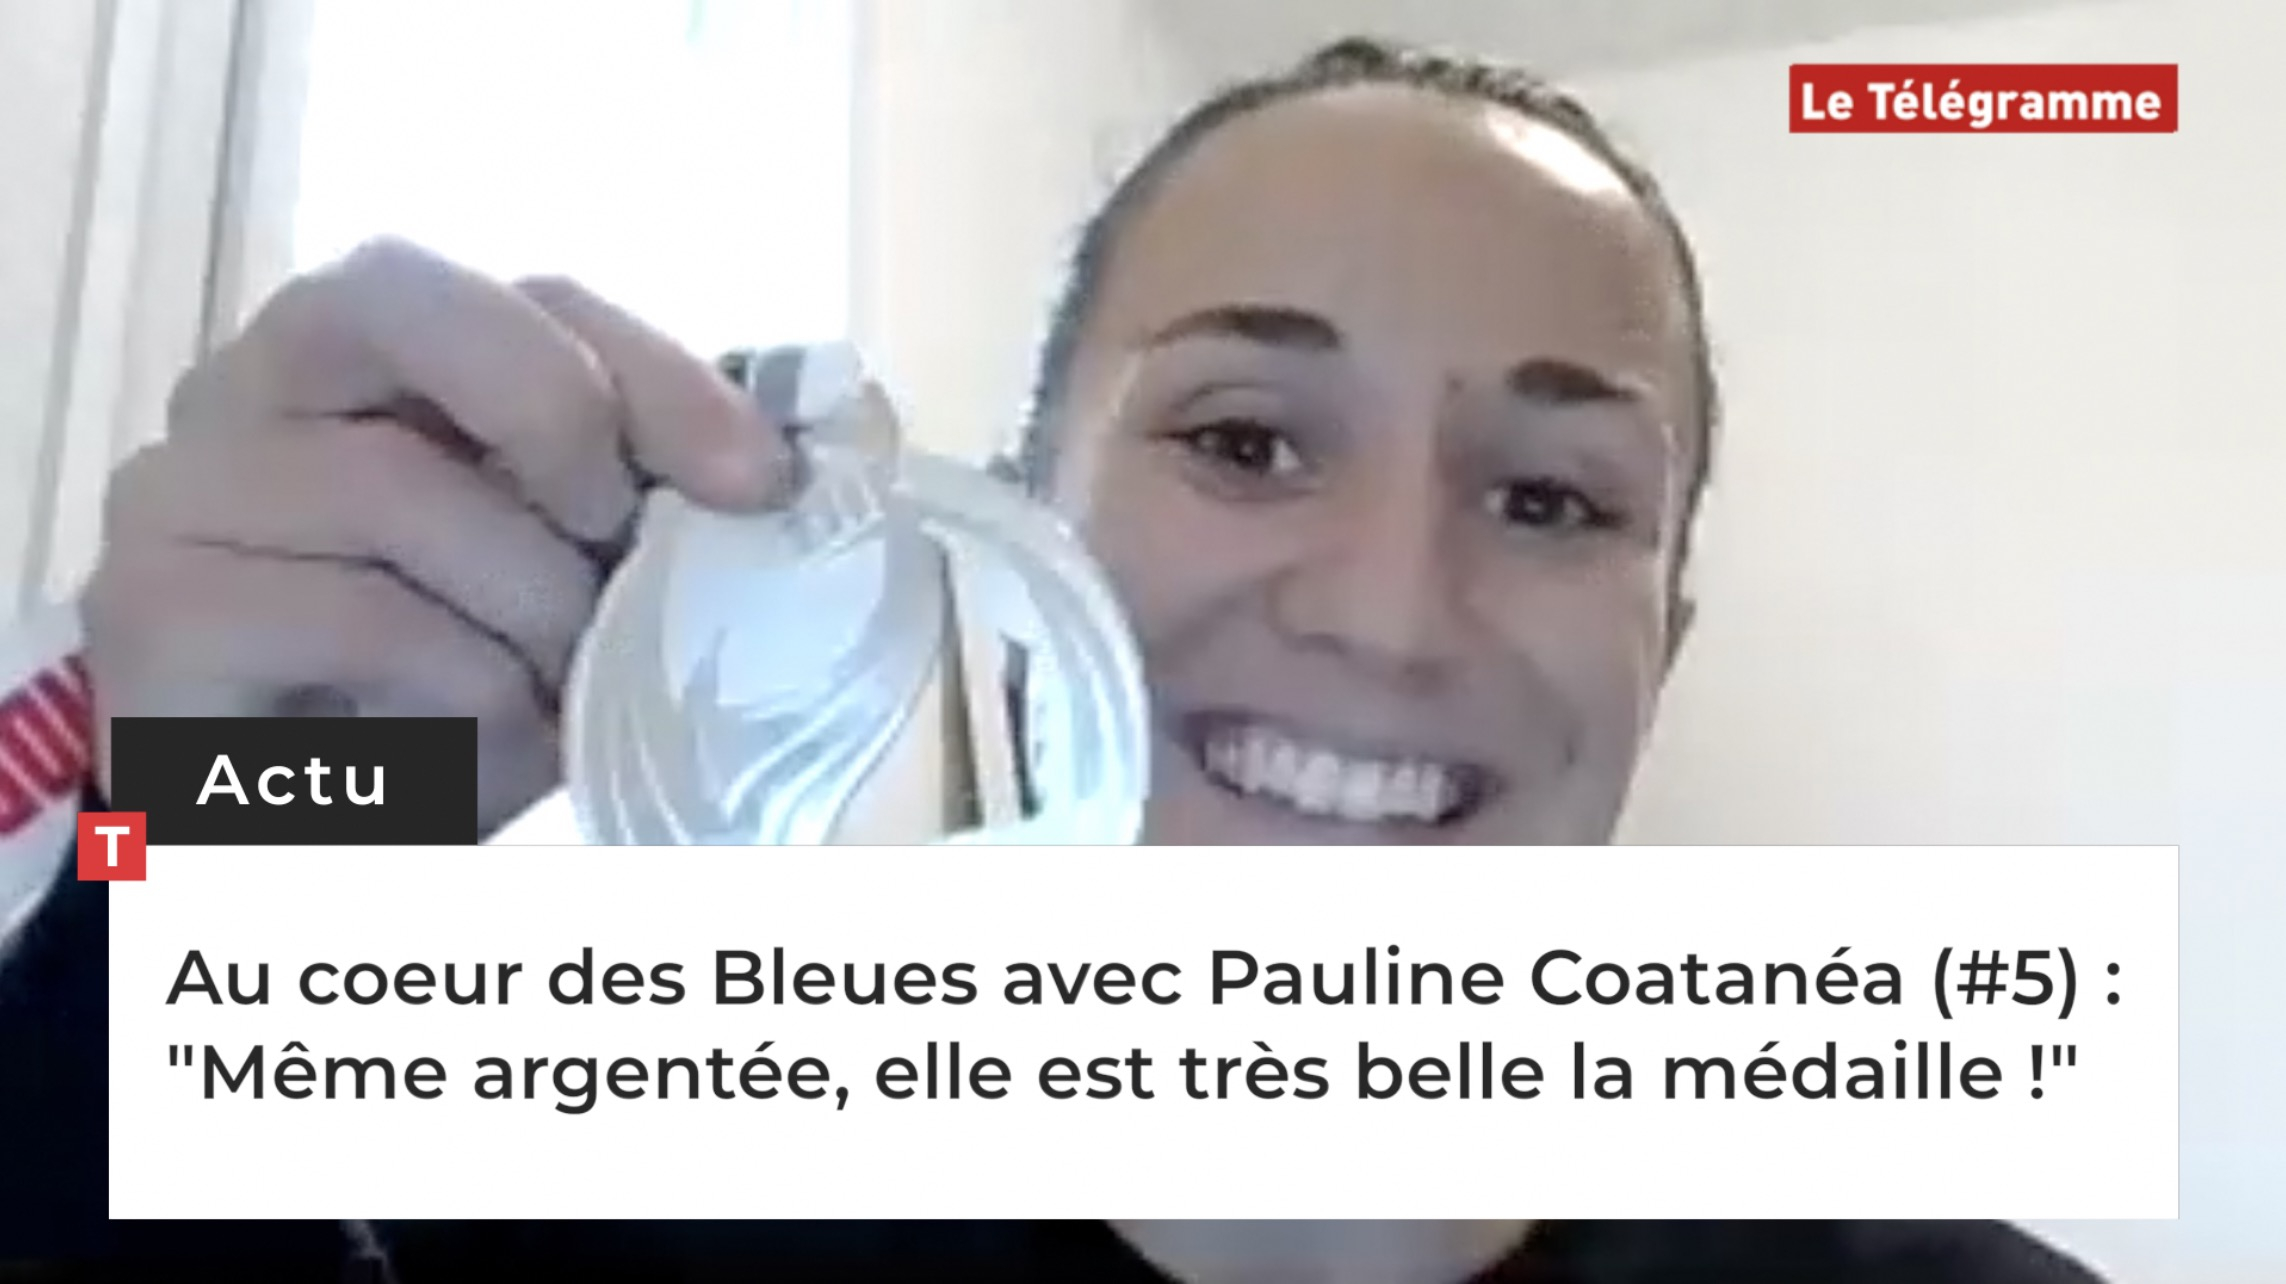 Au coeur des Bleues avec Pauline Coatanéa (#5) : "Même argentée, elle est très belle la médaille !" (Le Télégramme)